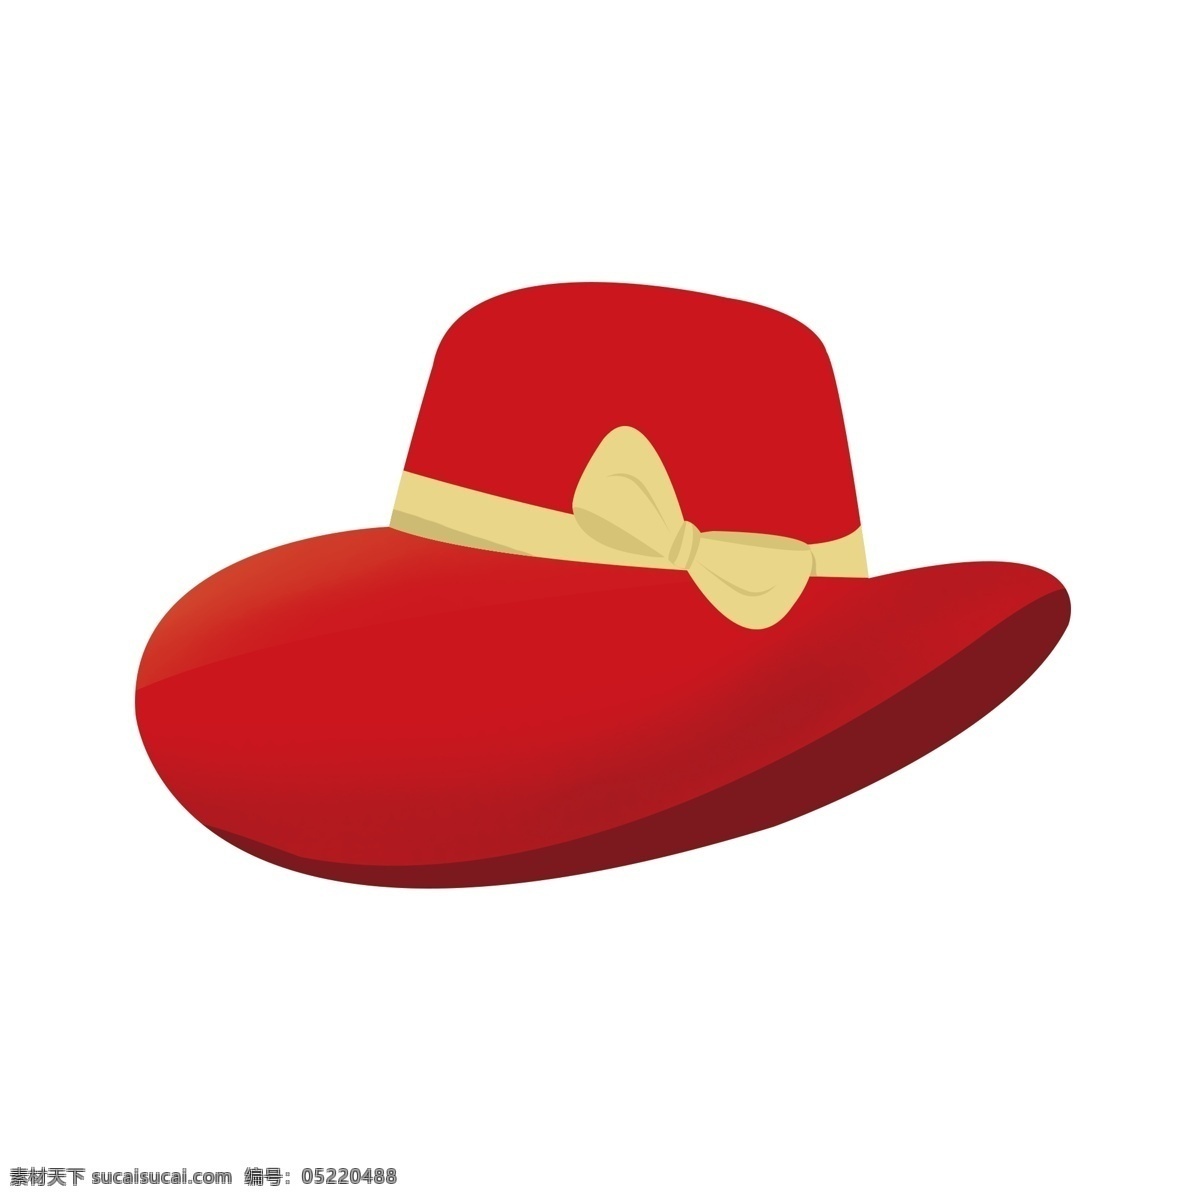 原创 手绘 卡通 帽子 商用 手绘素材 卡通帽子 生活用品 手绘帽子 红色帽子